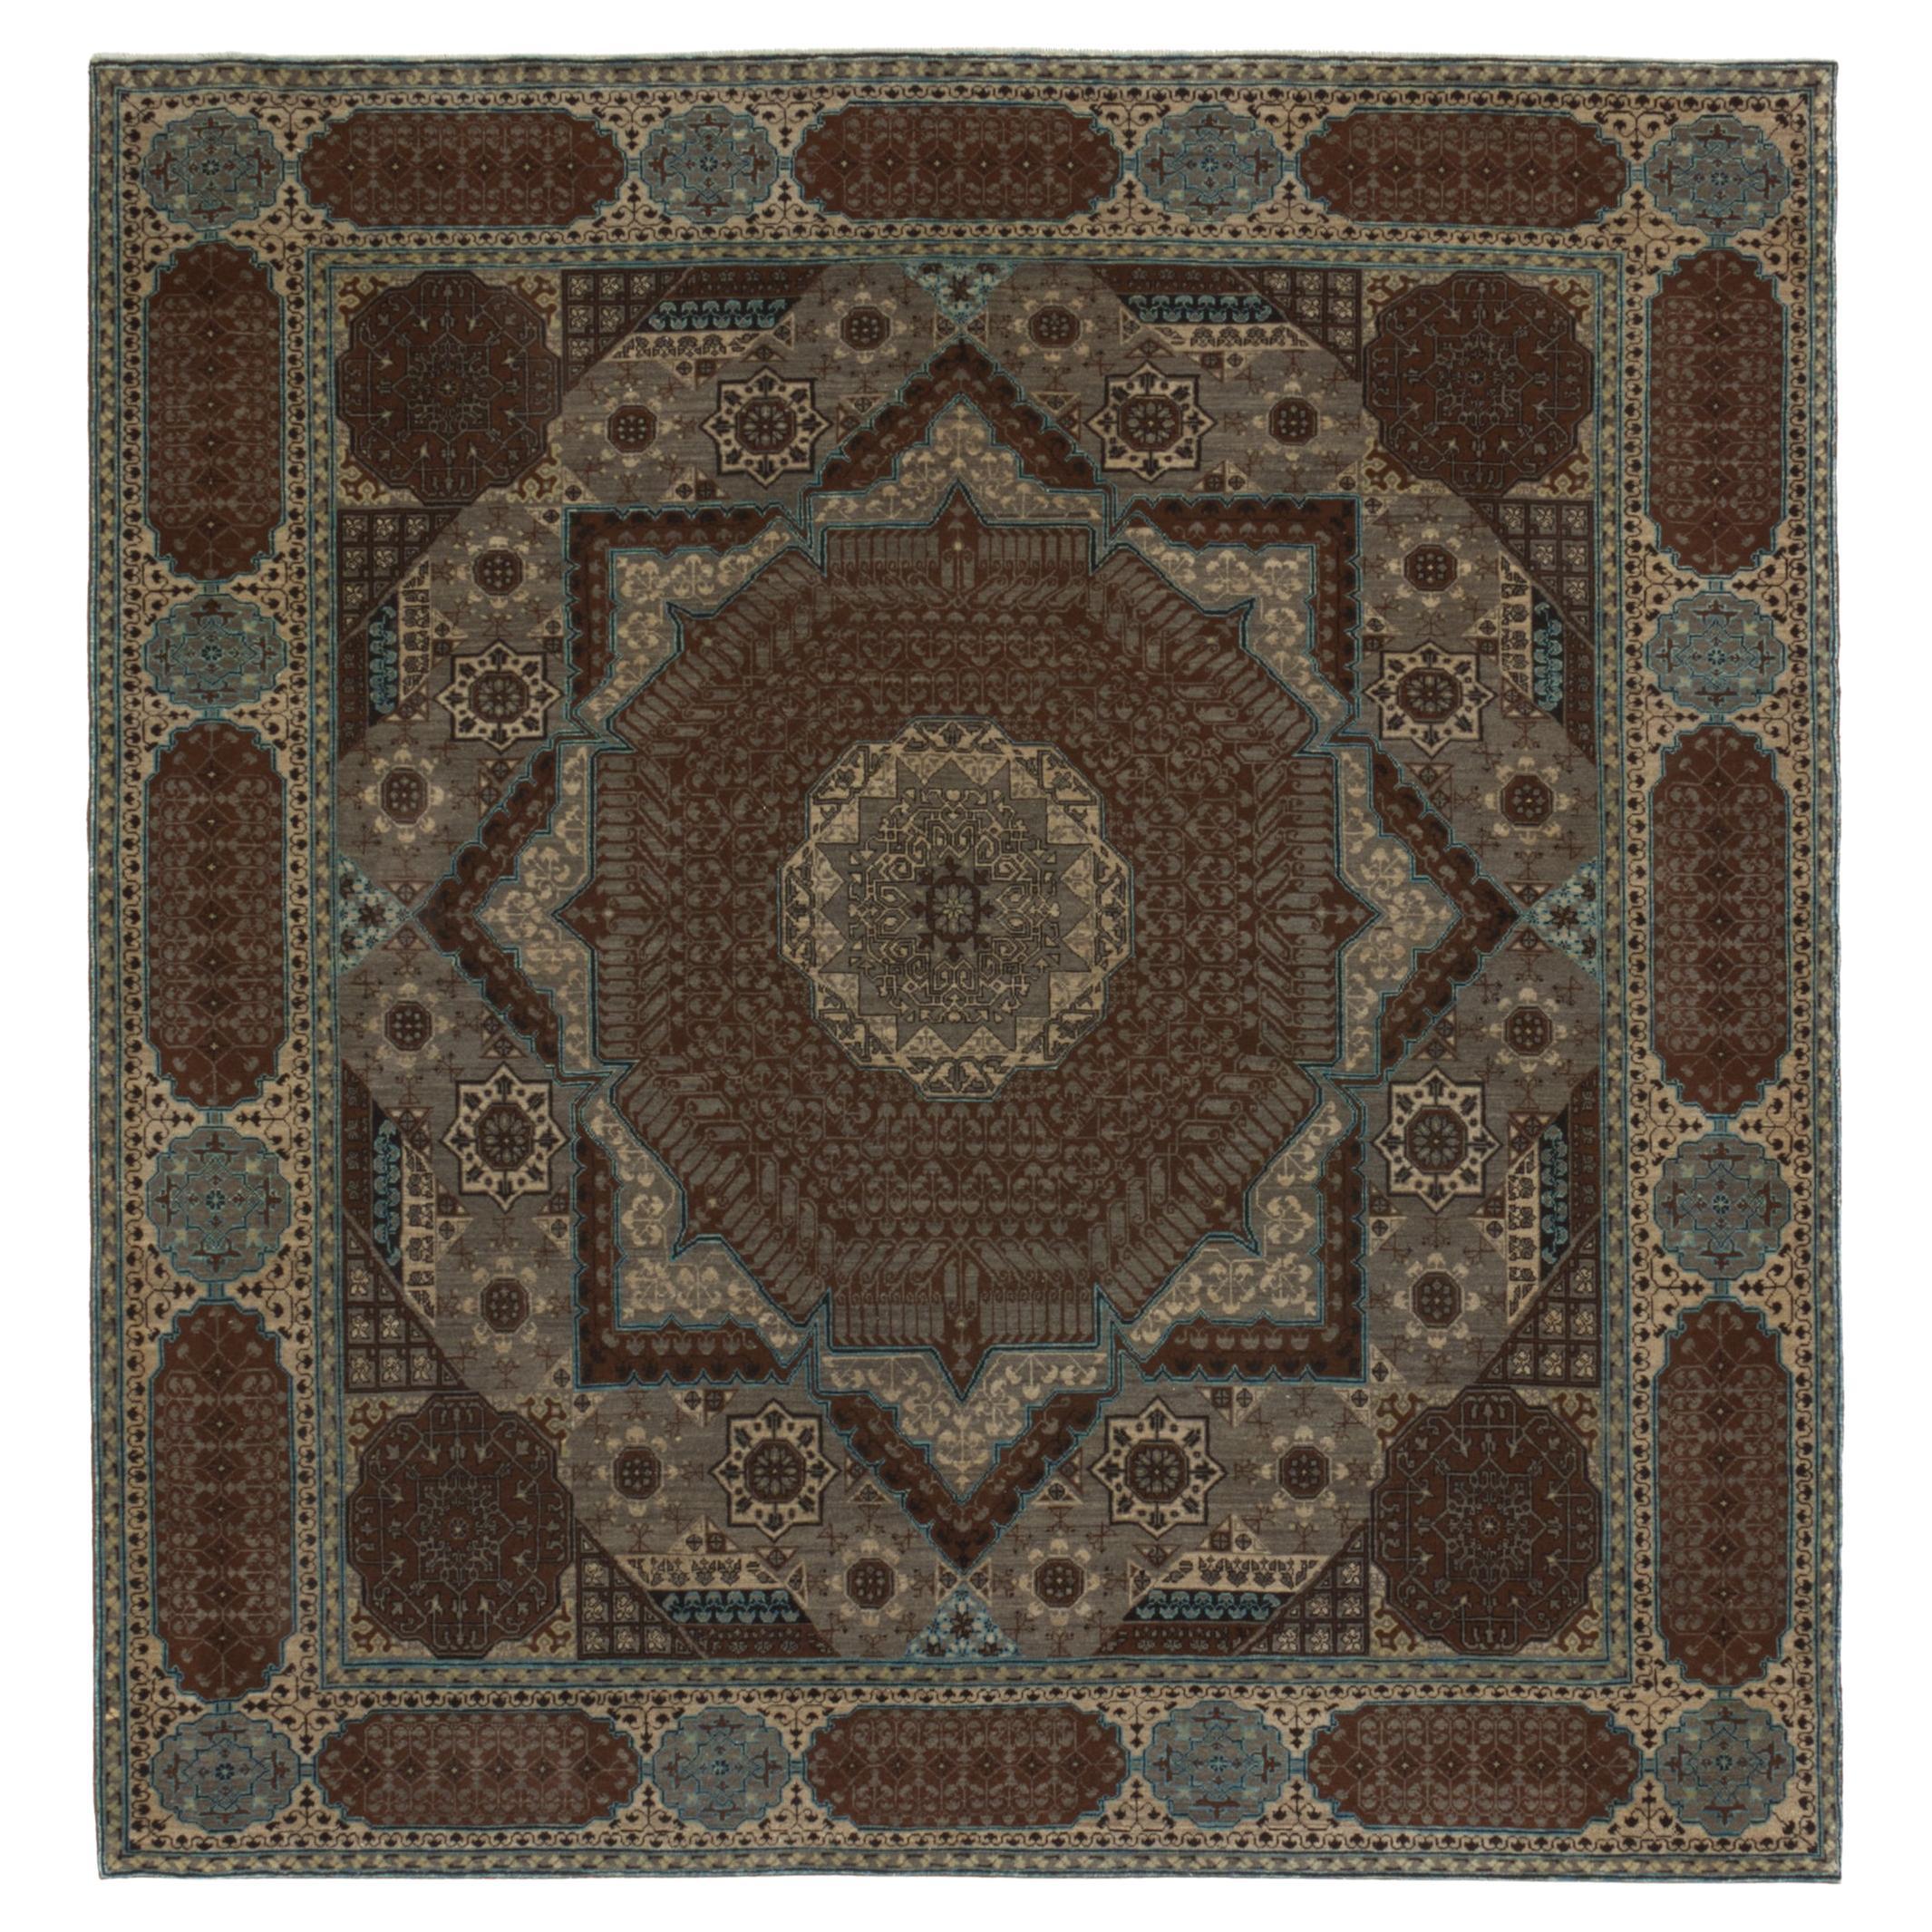 Ararat-Teppiche The Simonetti Mamluk Teppich 16. Jahrhundert Revival Teppich - Naturfarben